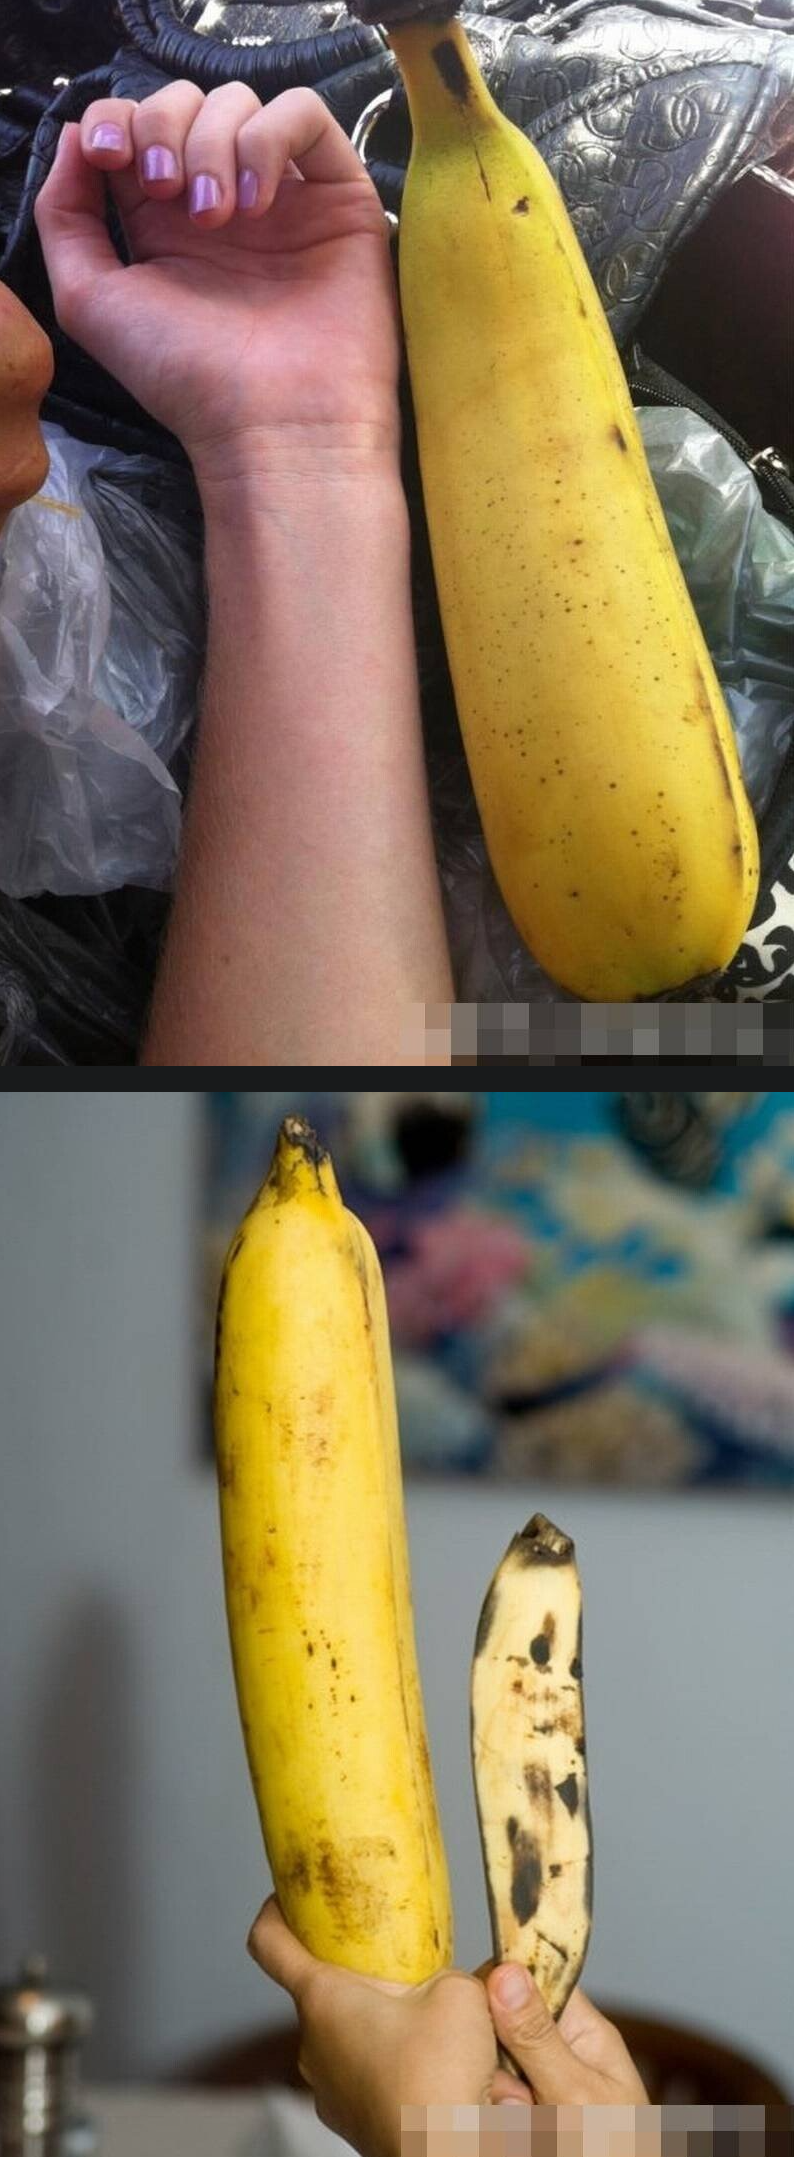 동남아 바나나 크기